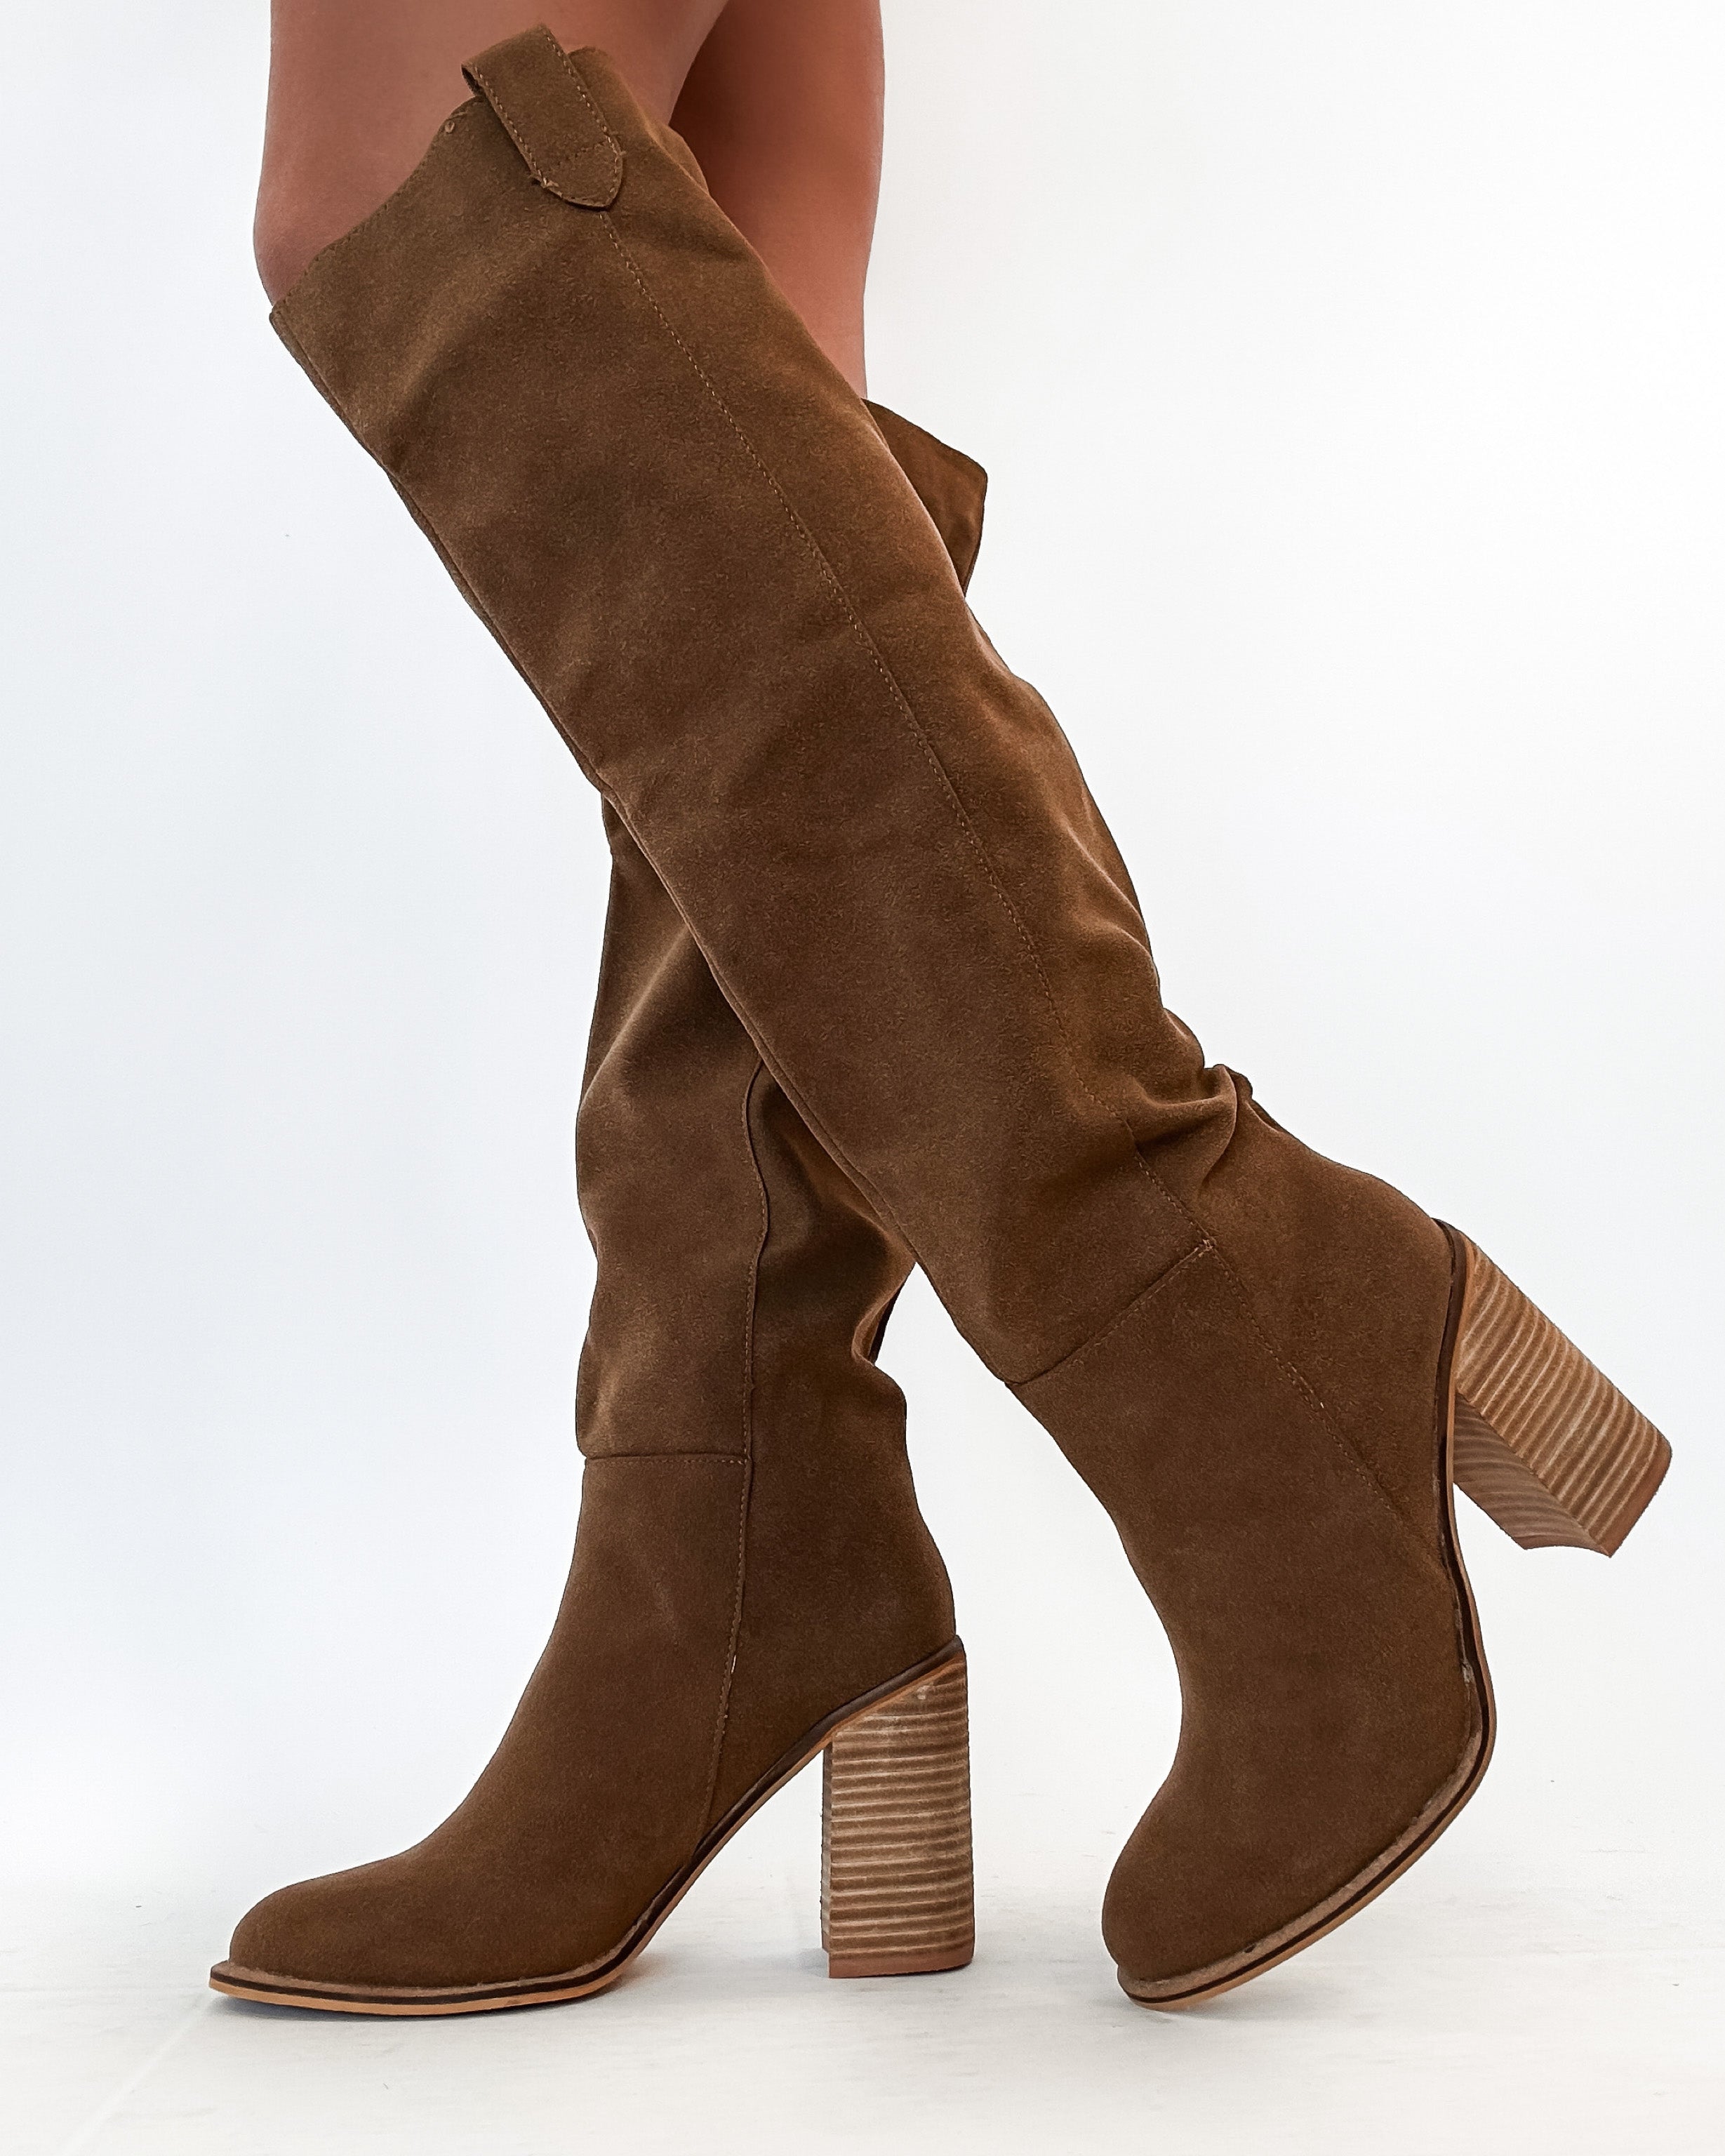 Saint Knee High Boots- Camel